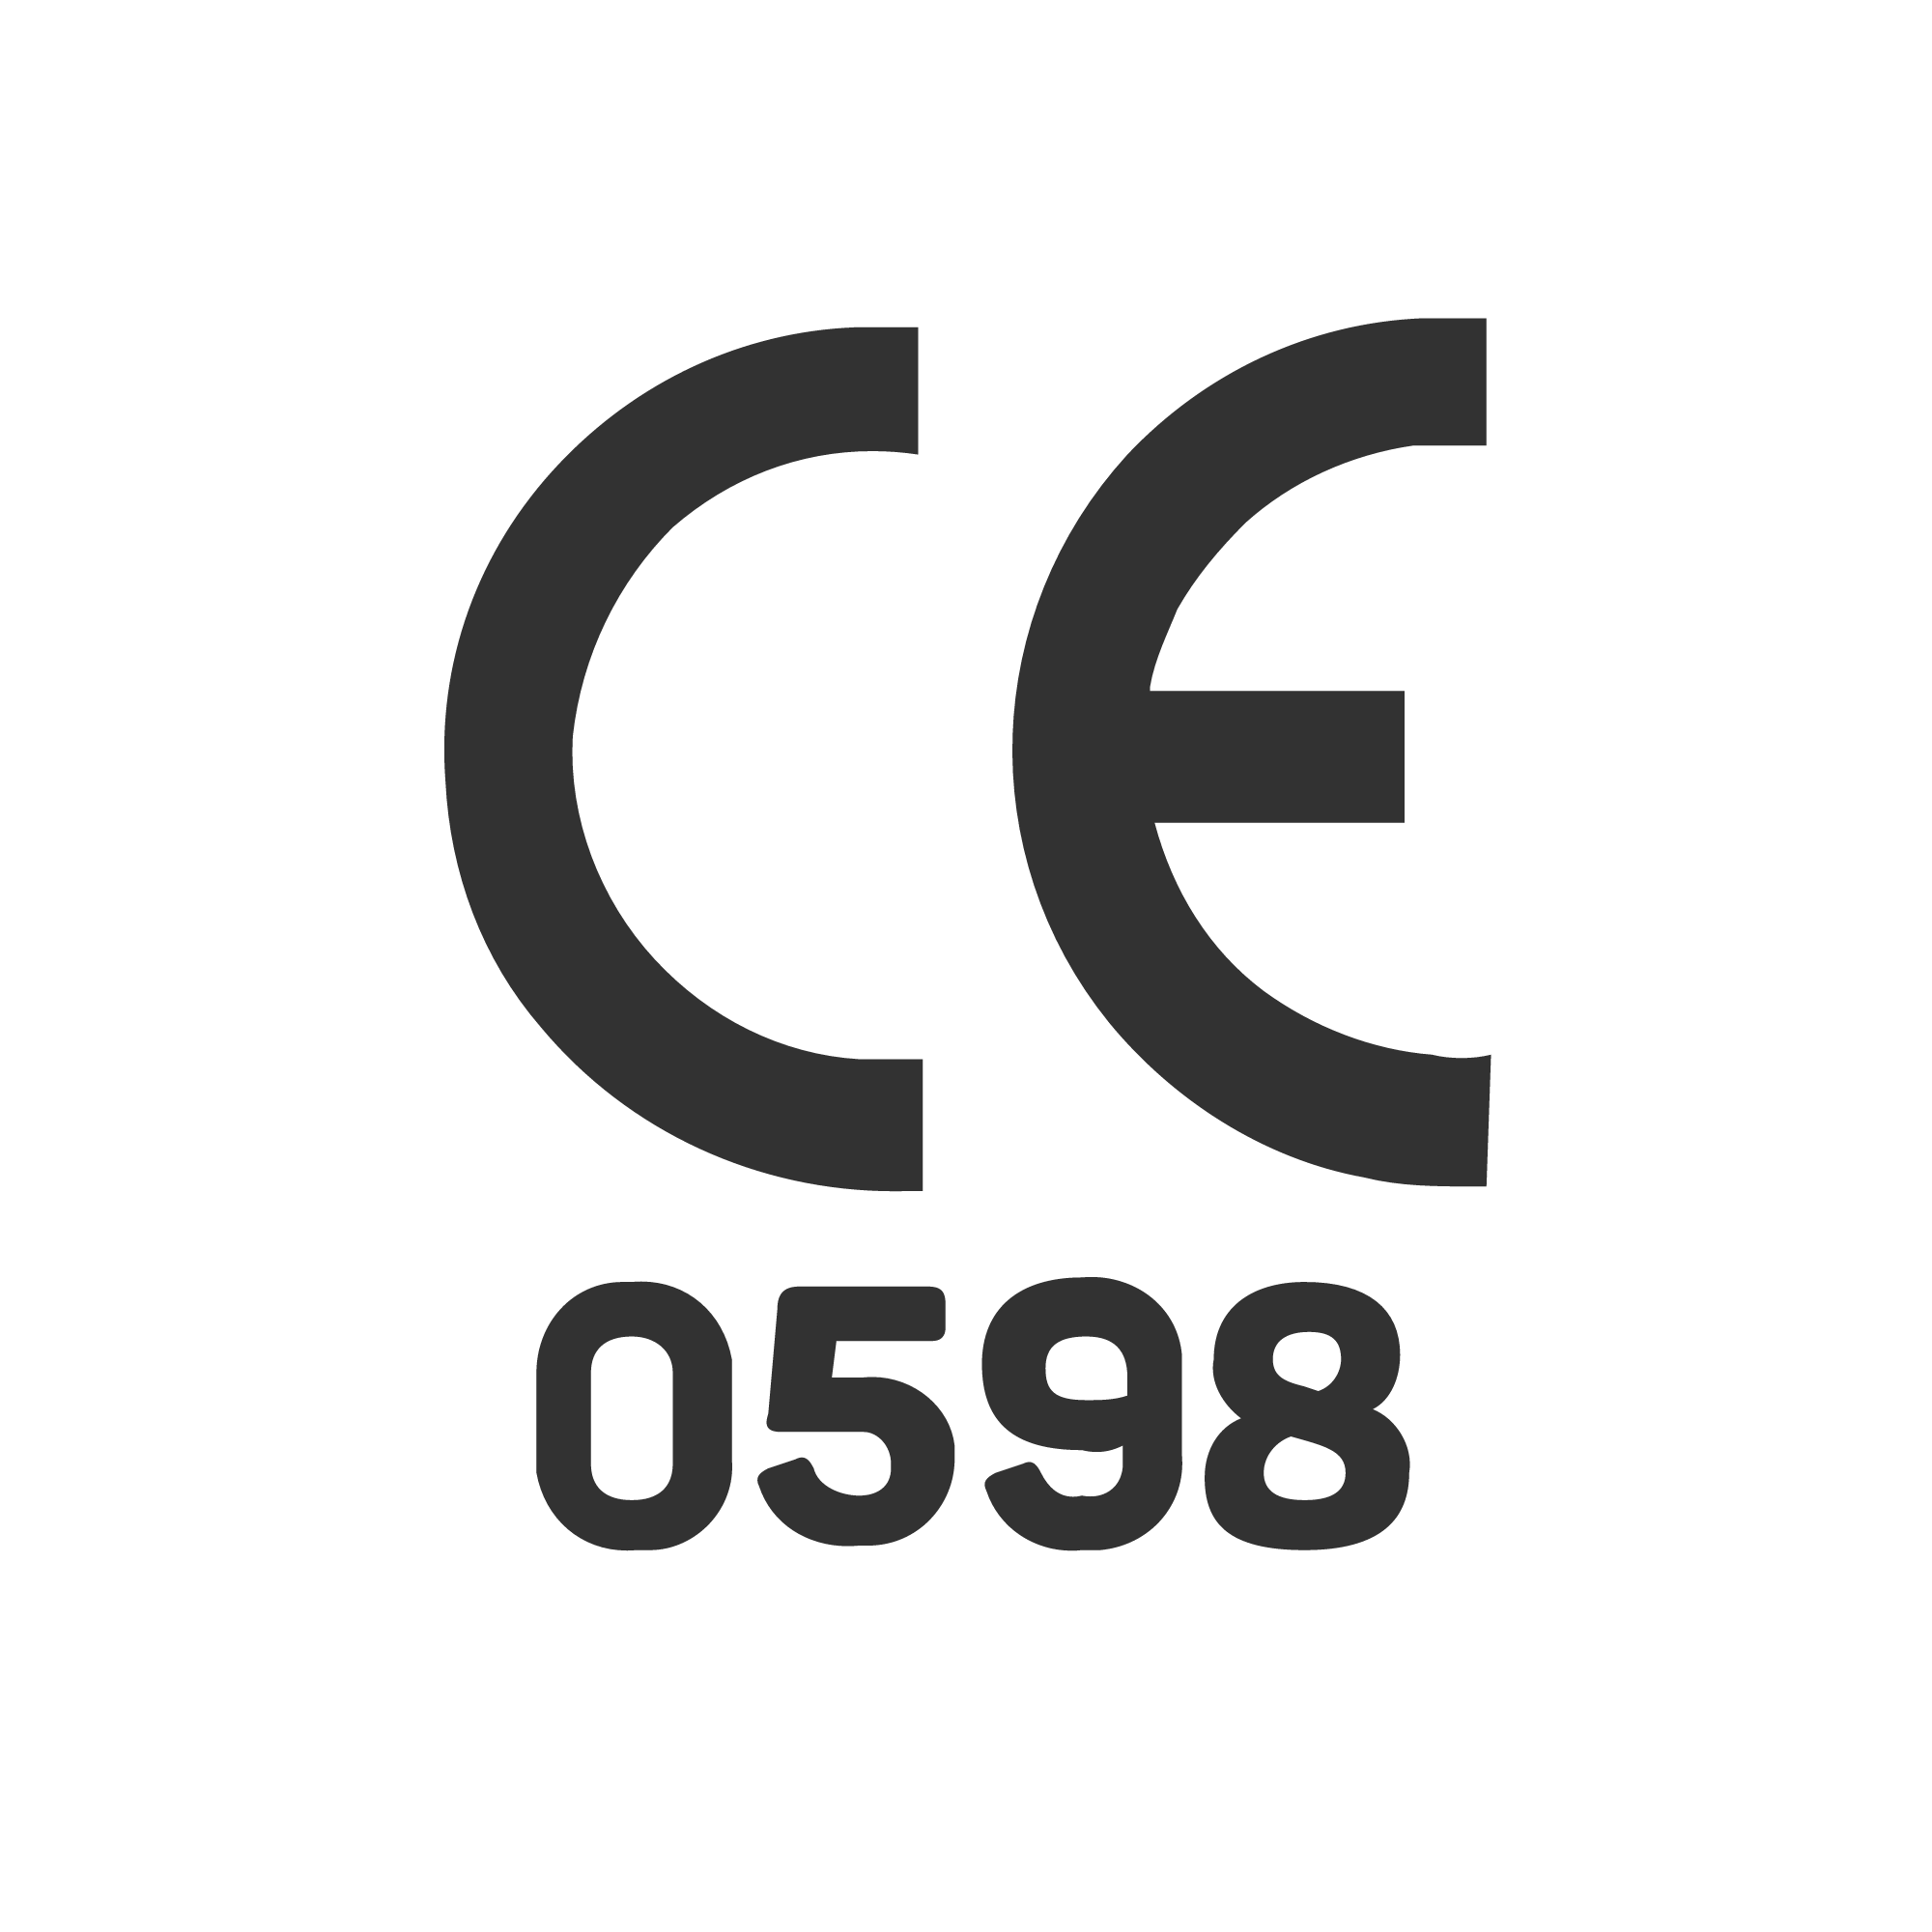 CE 0598